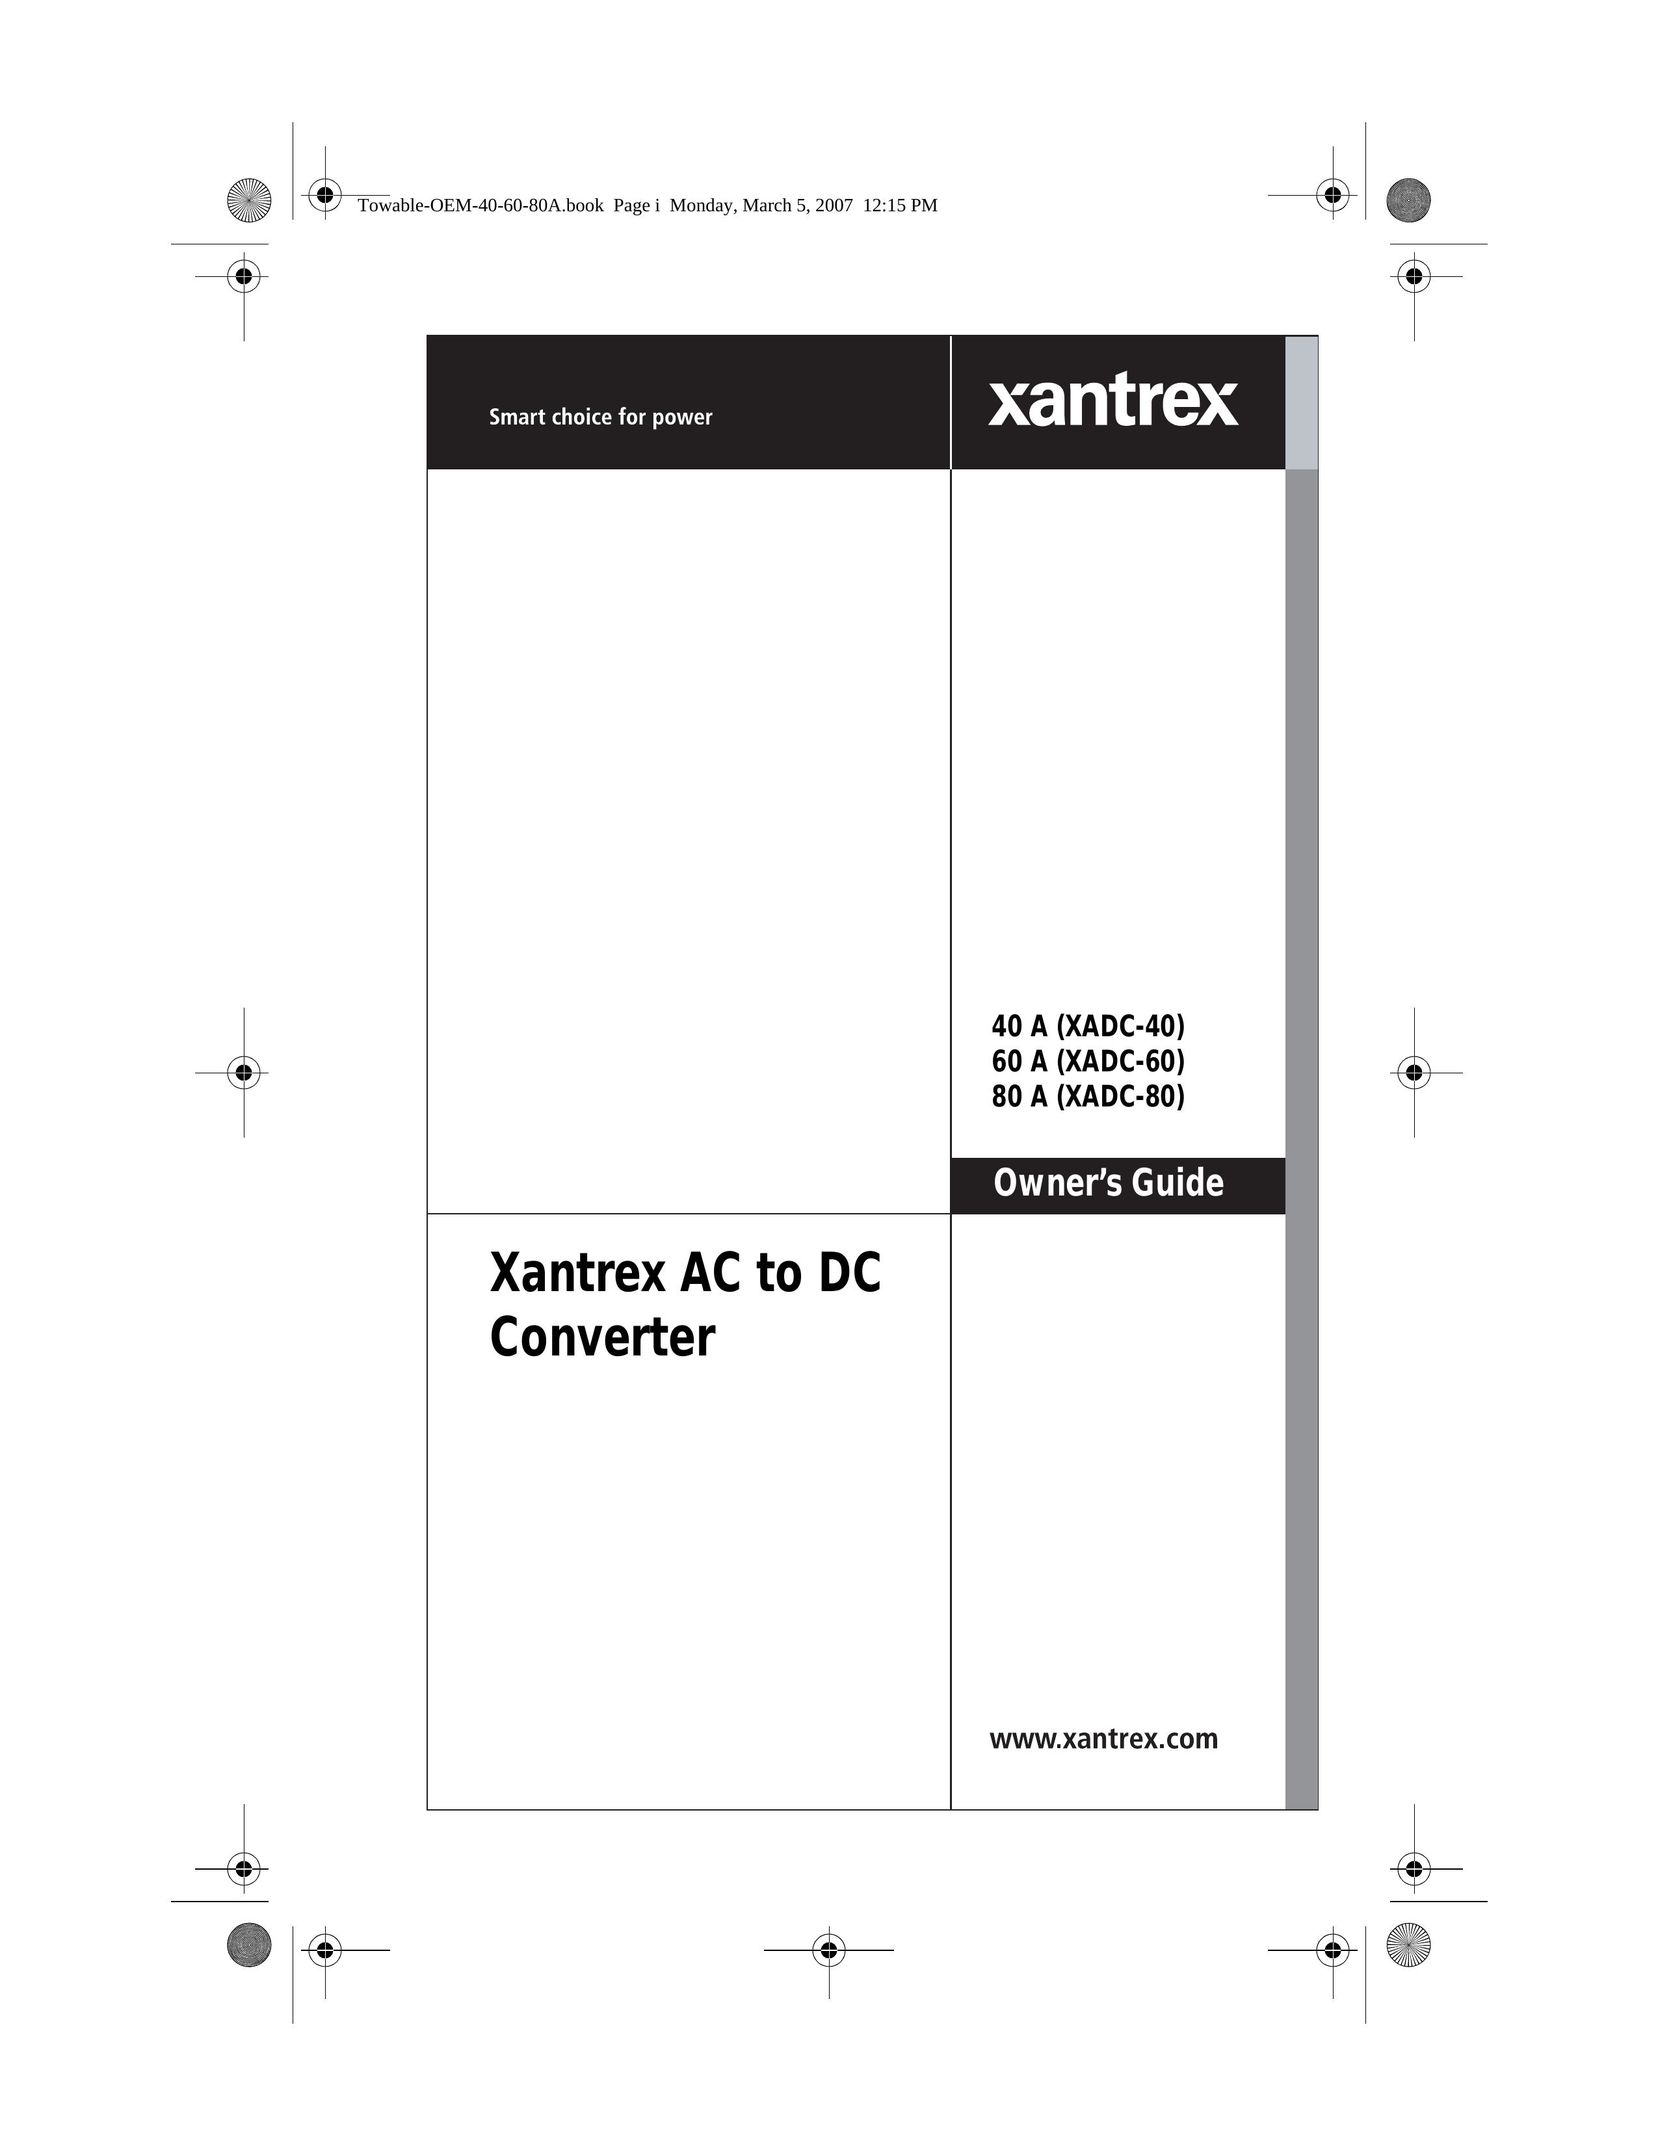 Xantrex Technology 80 A (XADC-80) Power Supply User Manual